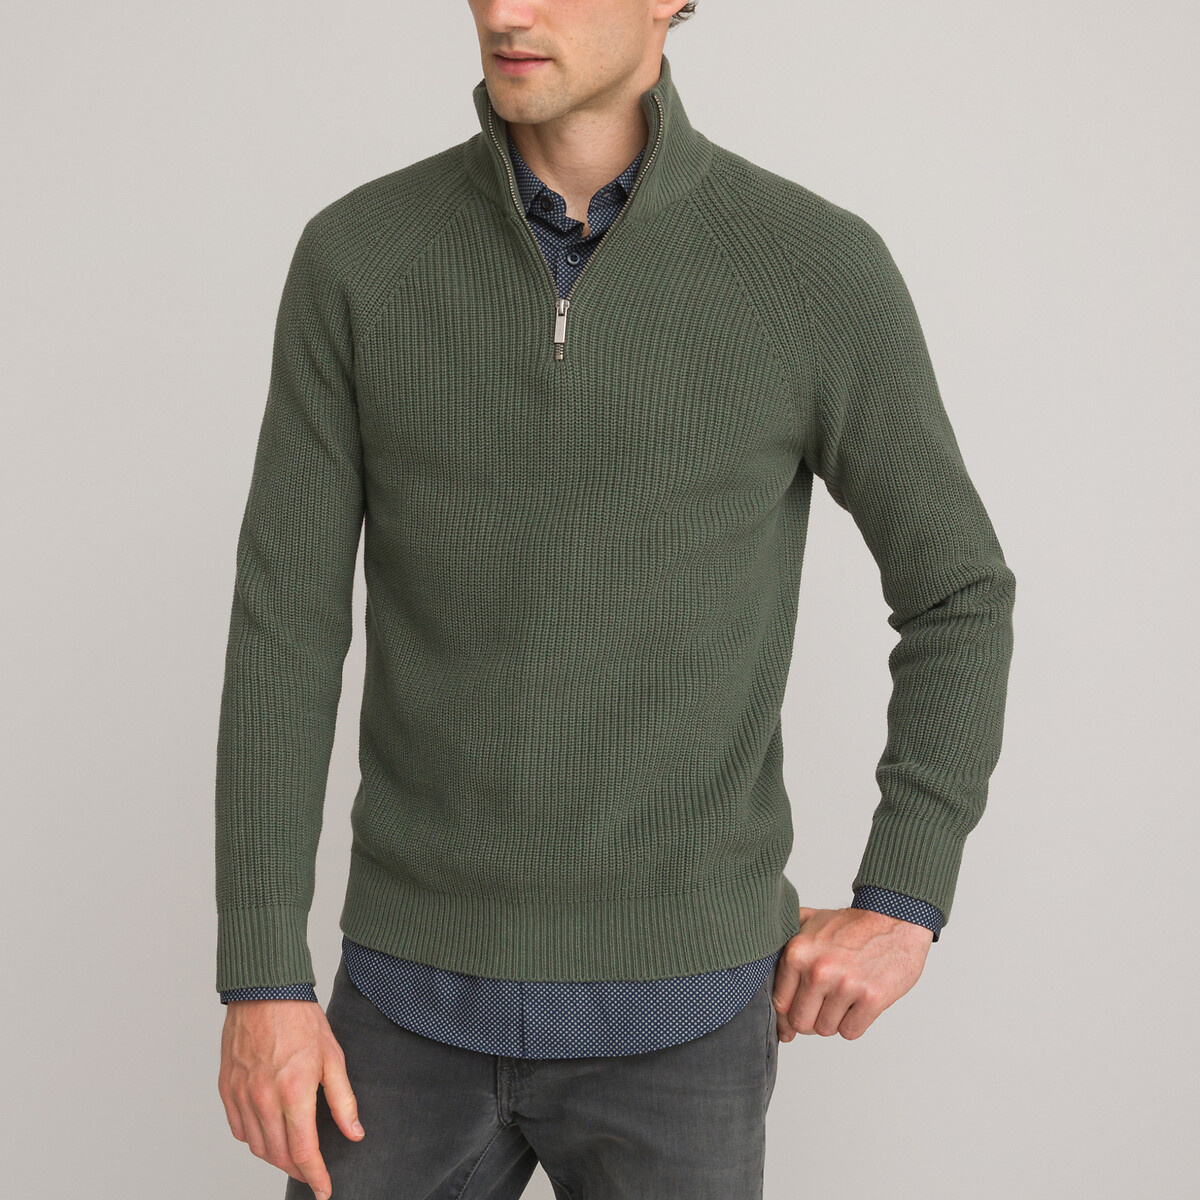 Пуловер С воротником-стойкой на молнии в английский рубчик S зеленый